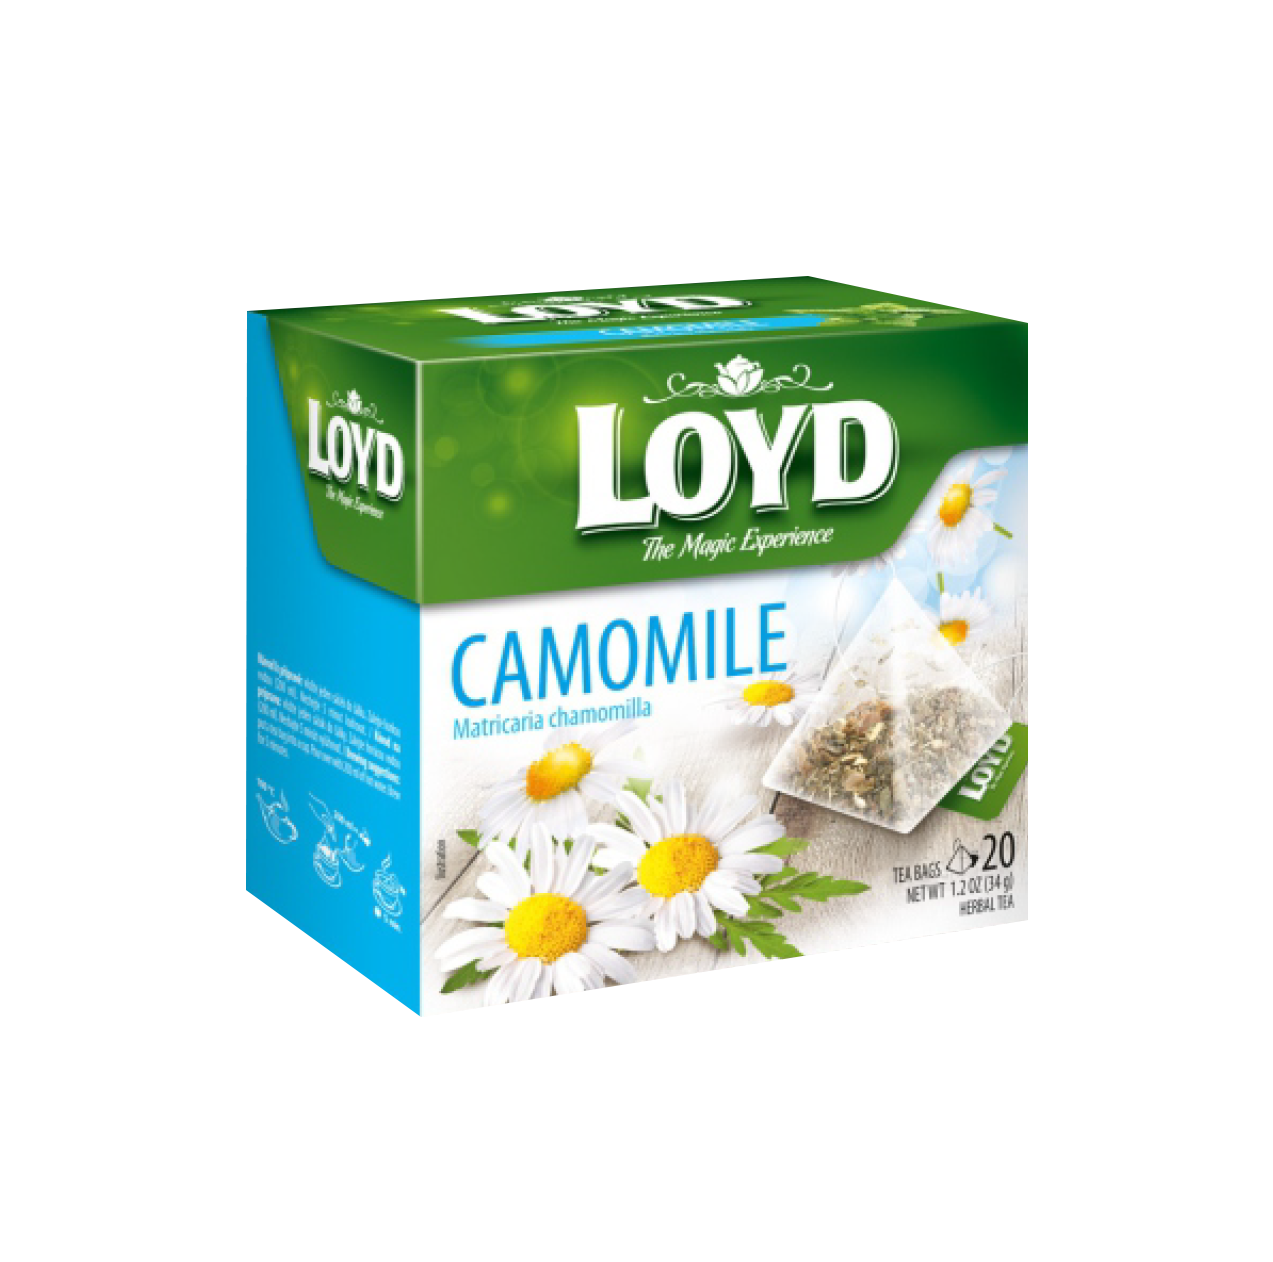 LOYD Camomile Tea 20 bags